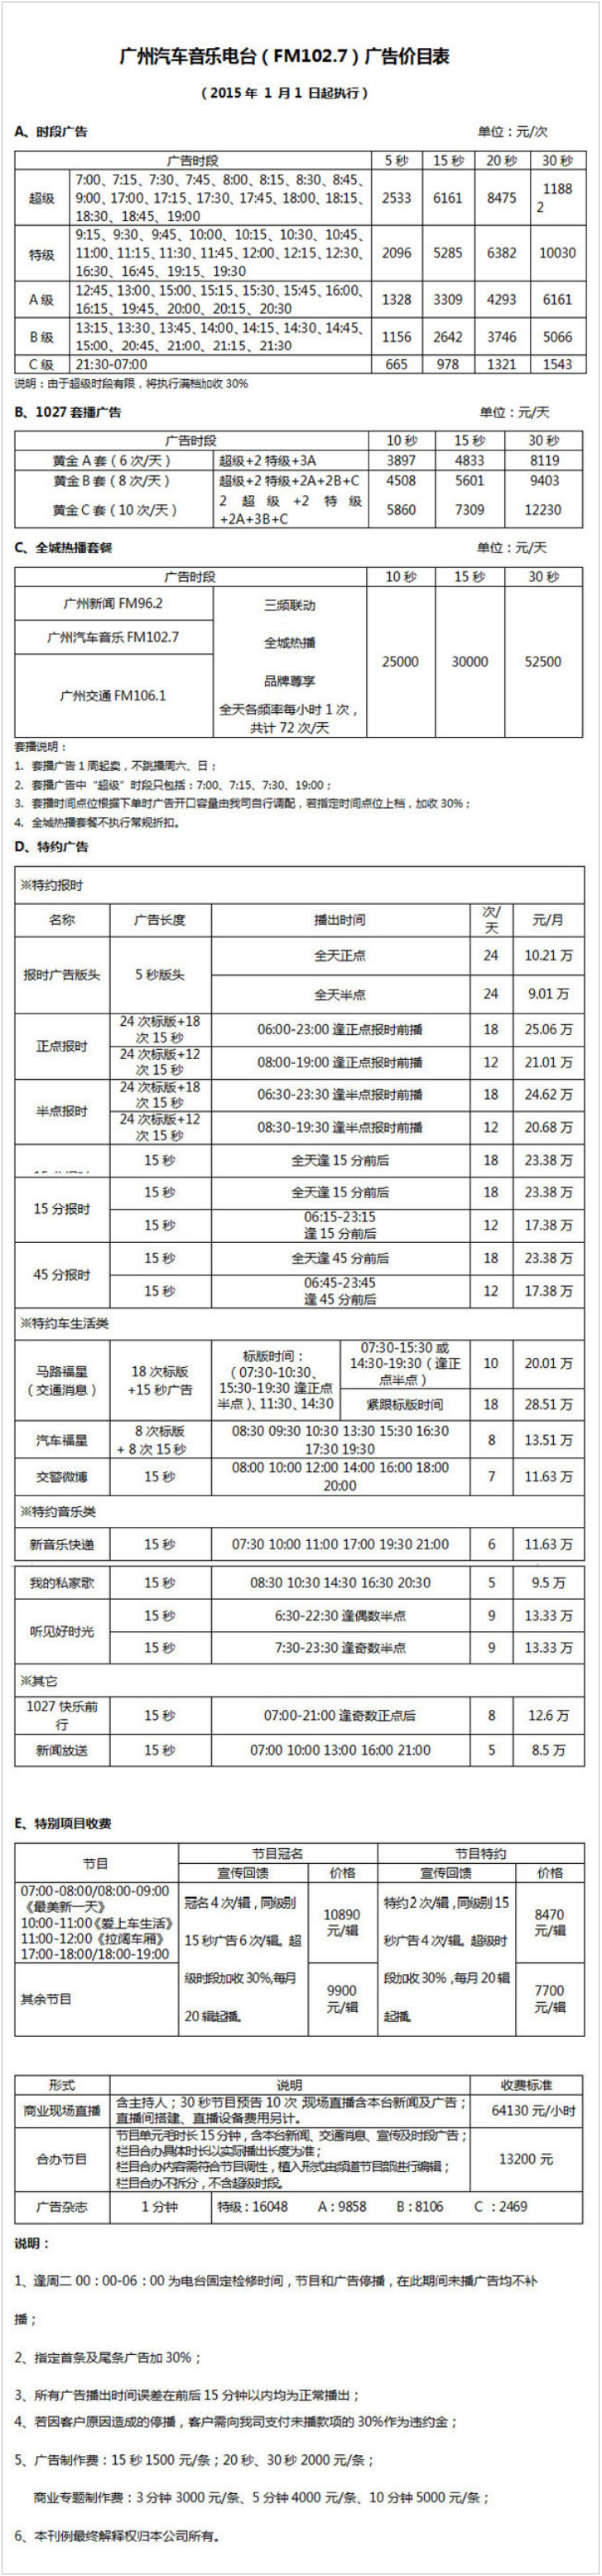 2015广州人民广播电台金曲广播102.7广告报价表.png